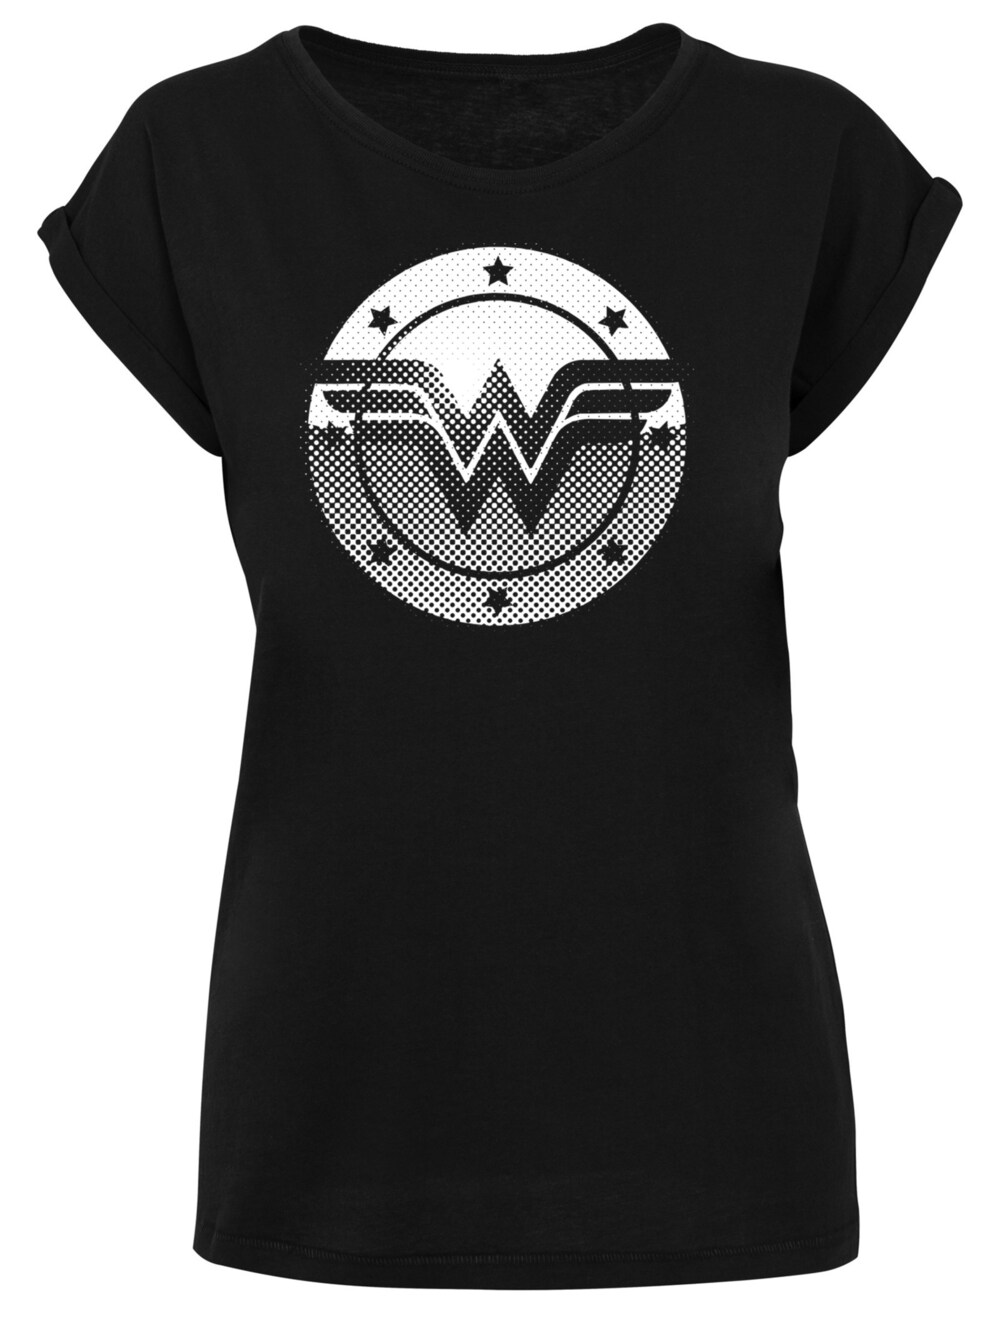 Рубашка F4Nt4Stic DC Comics Wonder Woman Spot Logo, черный носки dc comics wonder woman – logo серые